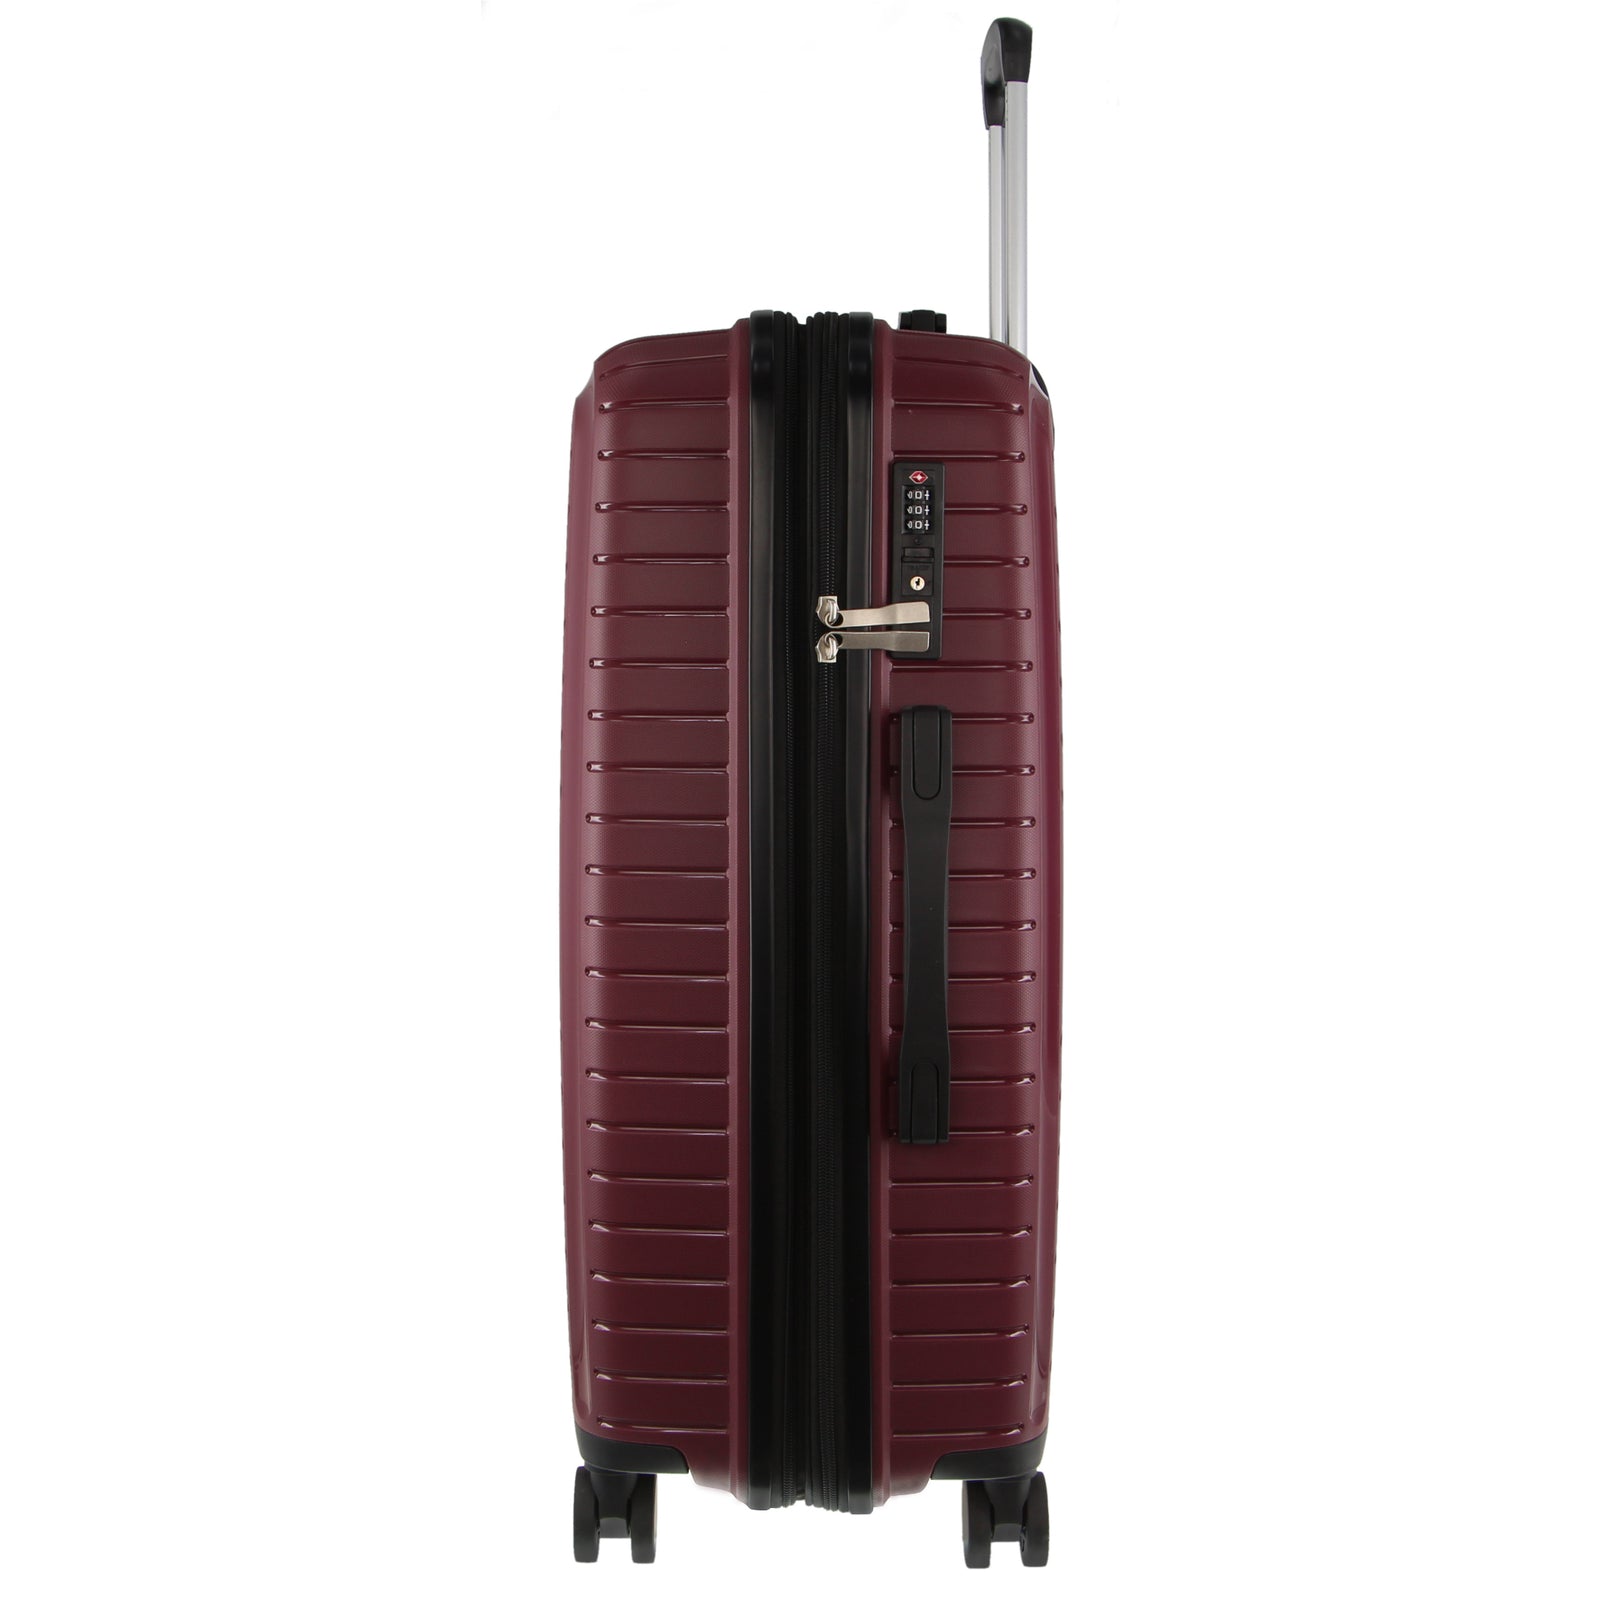 76cm Large Hard-Shell Suitcase Travel Luggage Bag - Burgundy